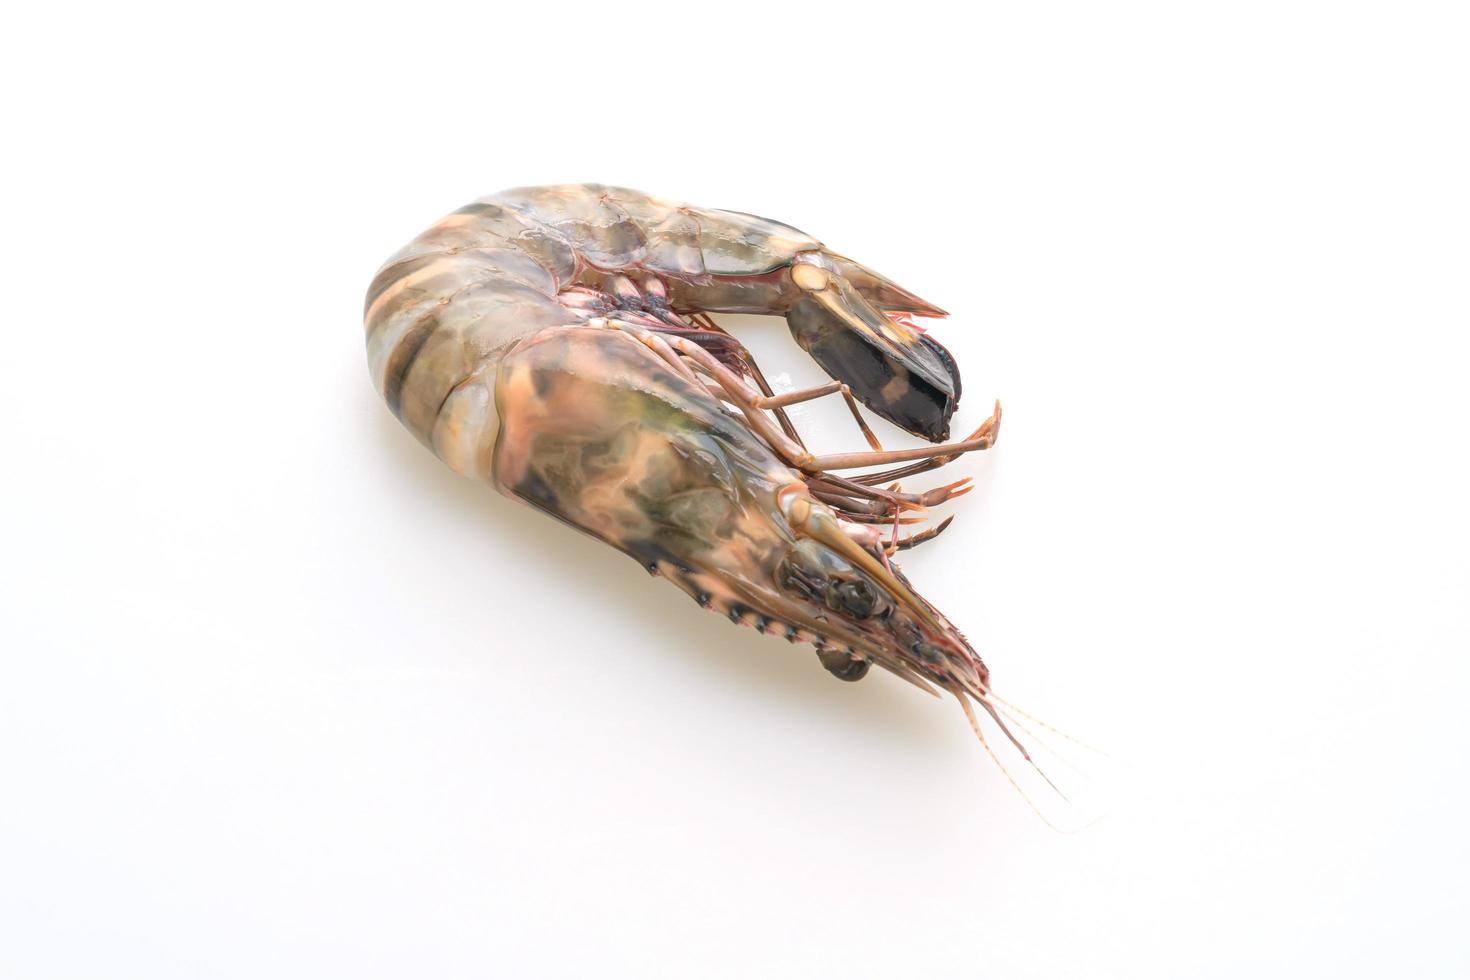 Fresh tiger prawn or shrimp isolated on white background photo